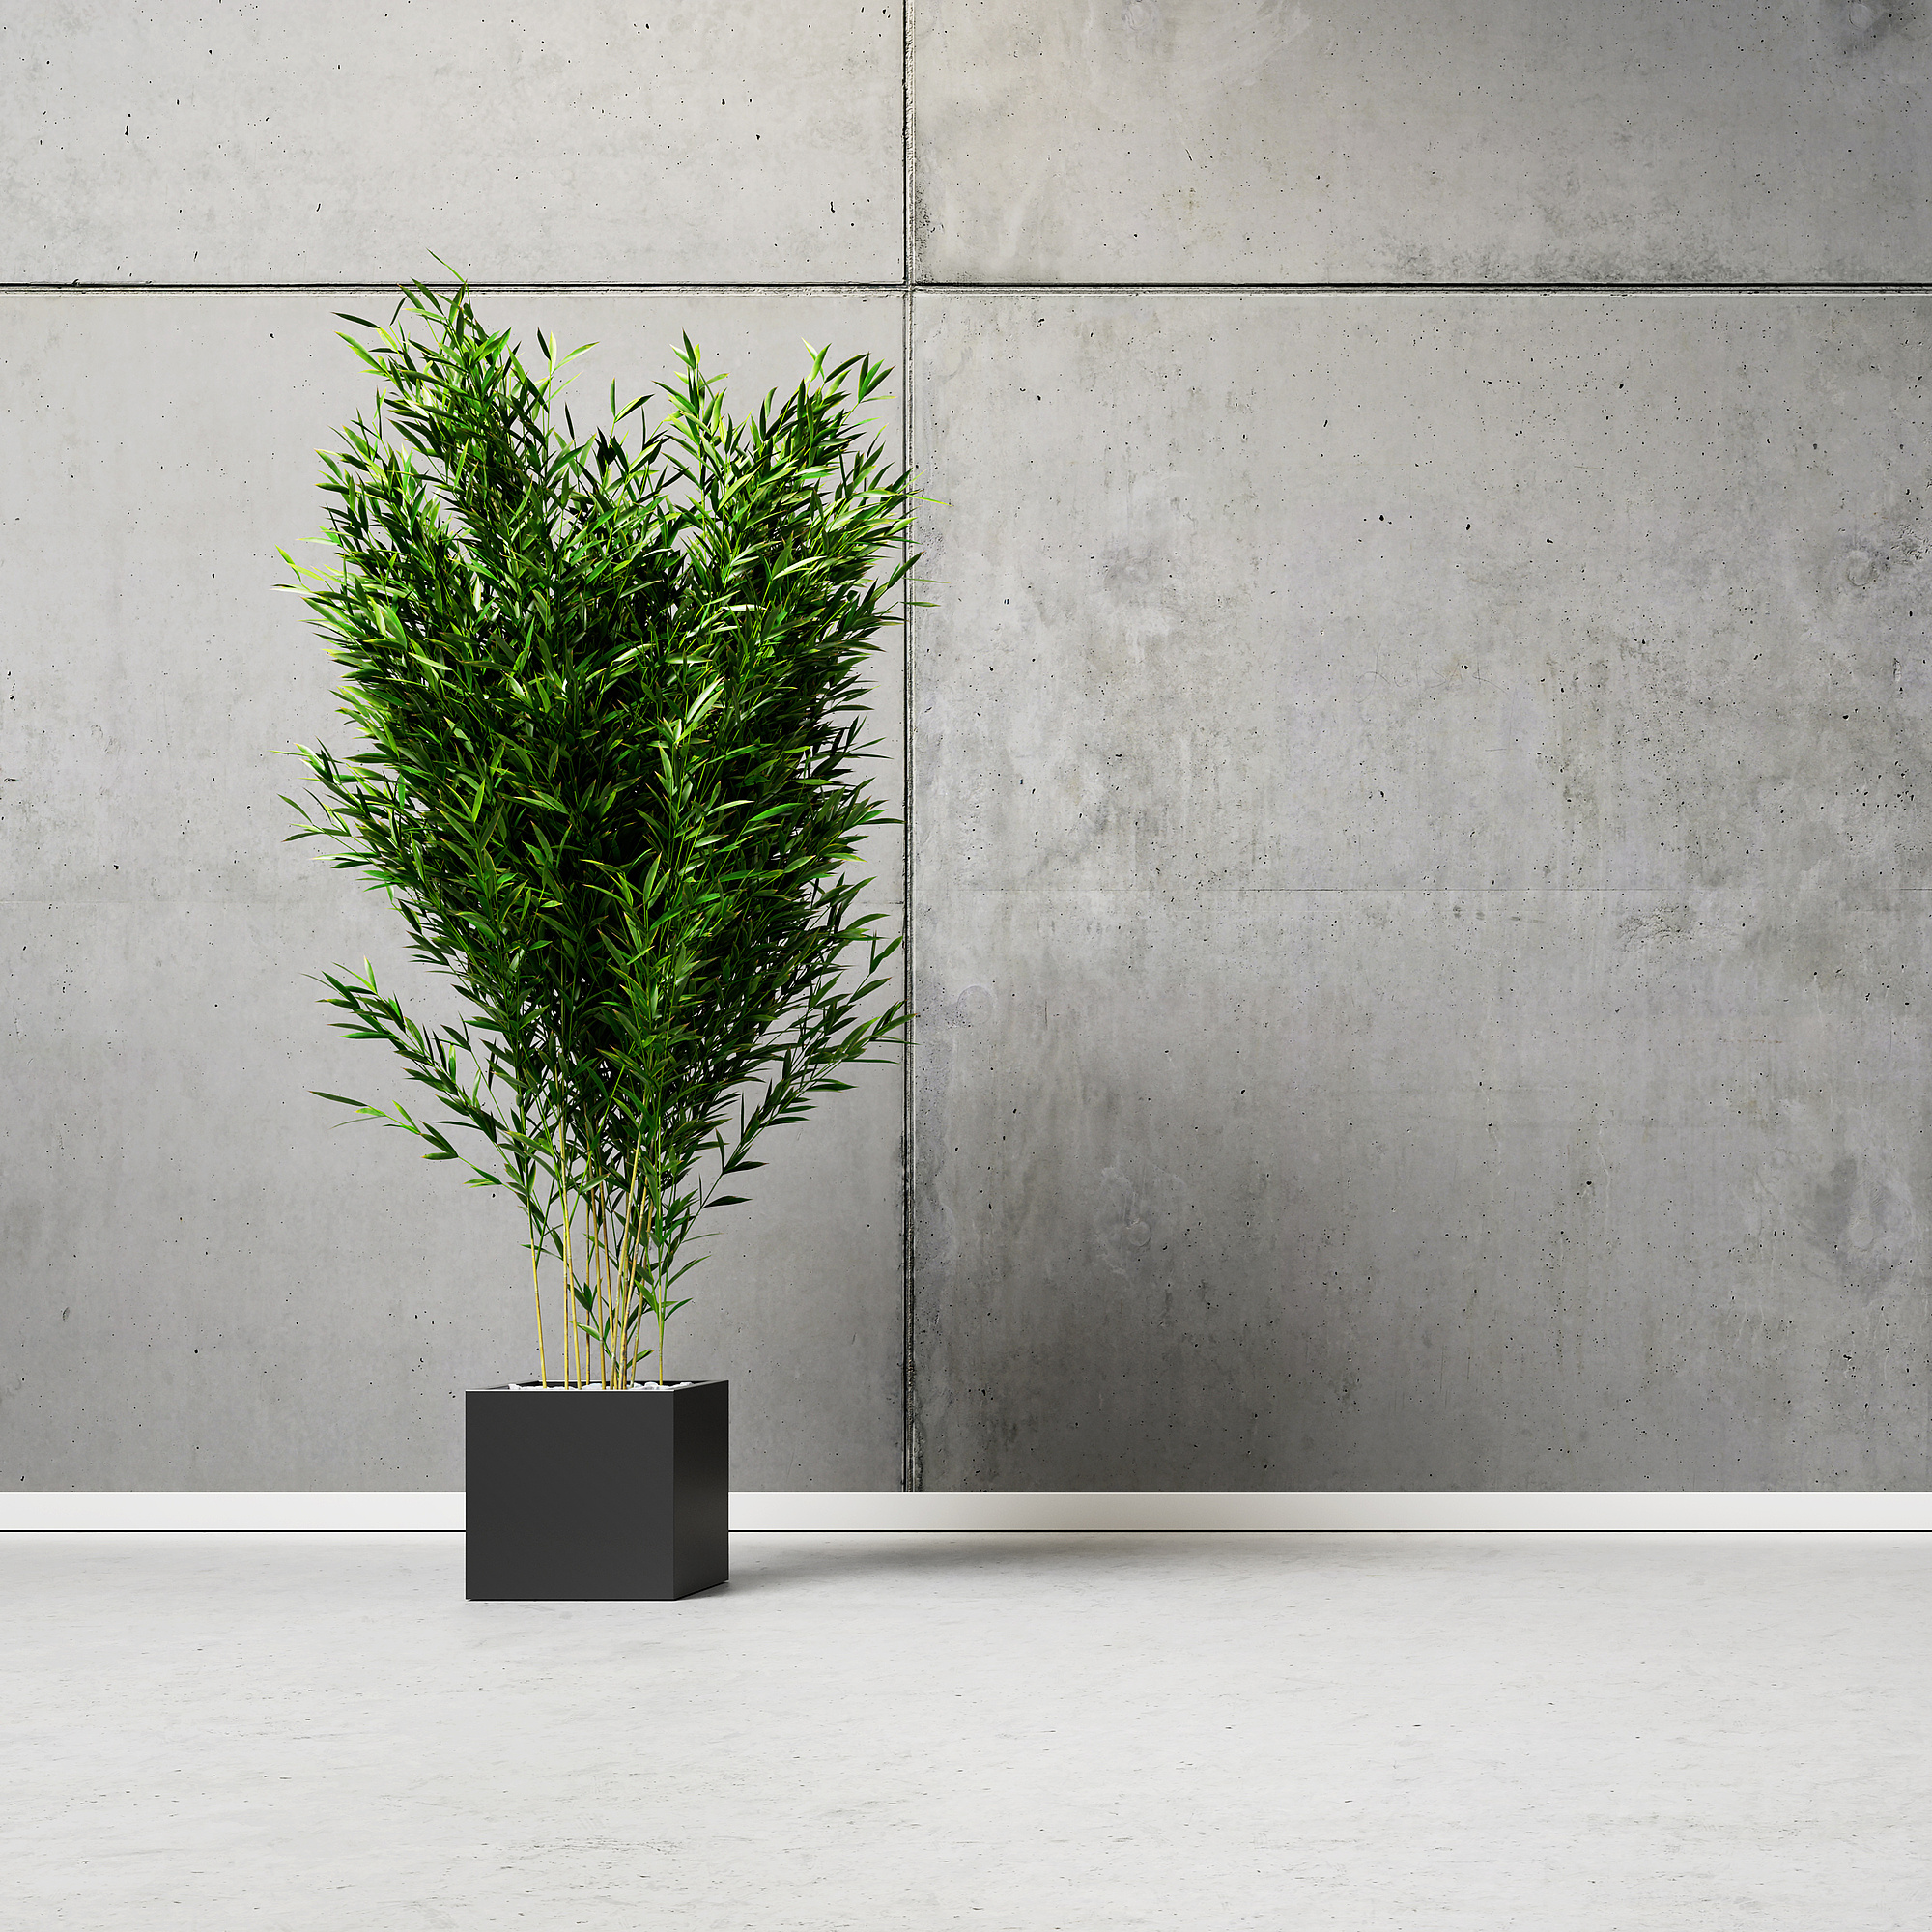 Eine Pflanze steht vor einer grauen Betonwand.